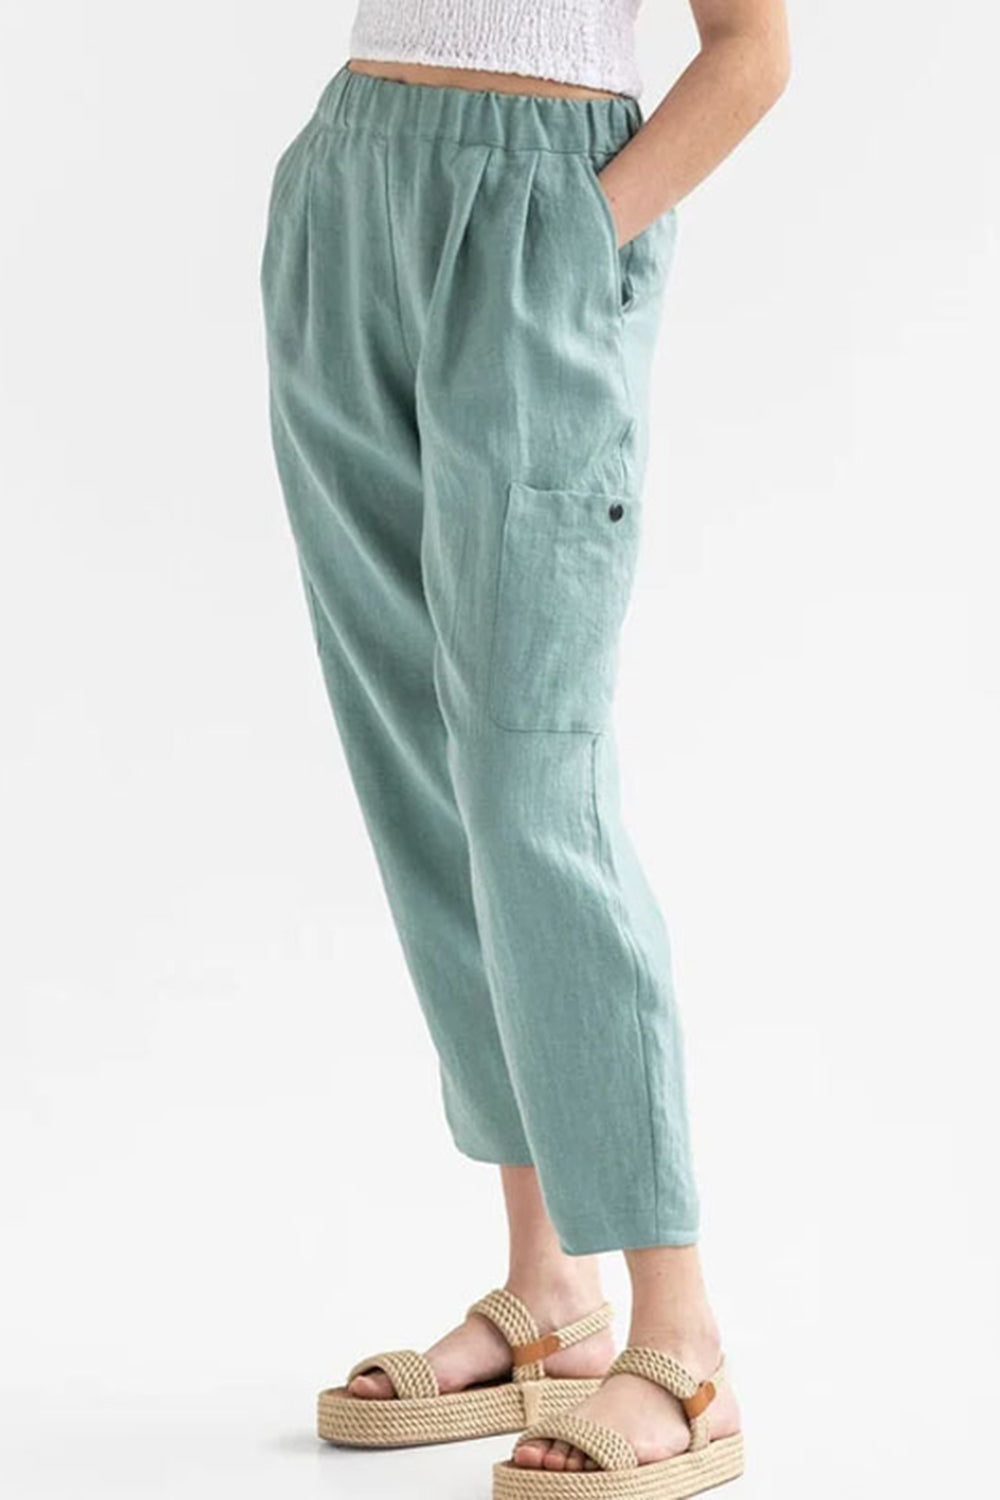 TEEK - Pocketed Elastic Waist Pants PANTS TEEK Trend Teal S 